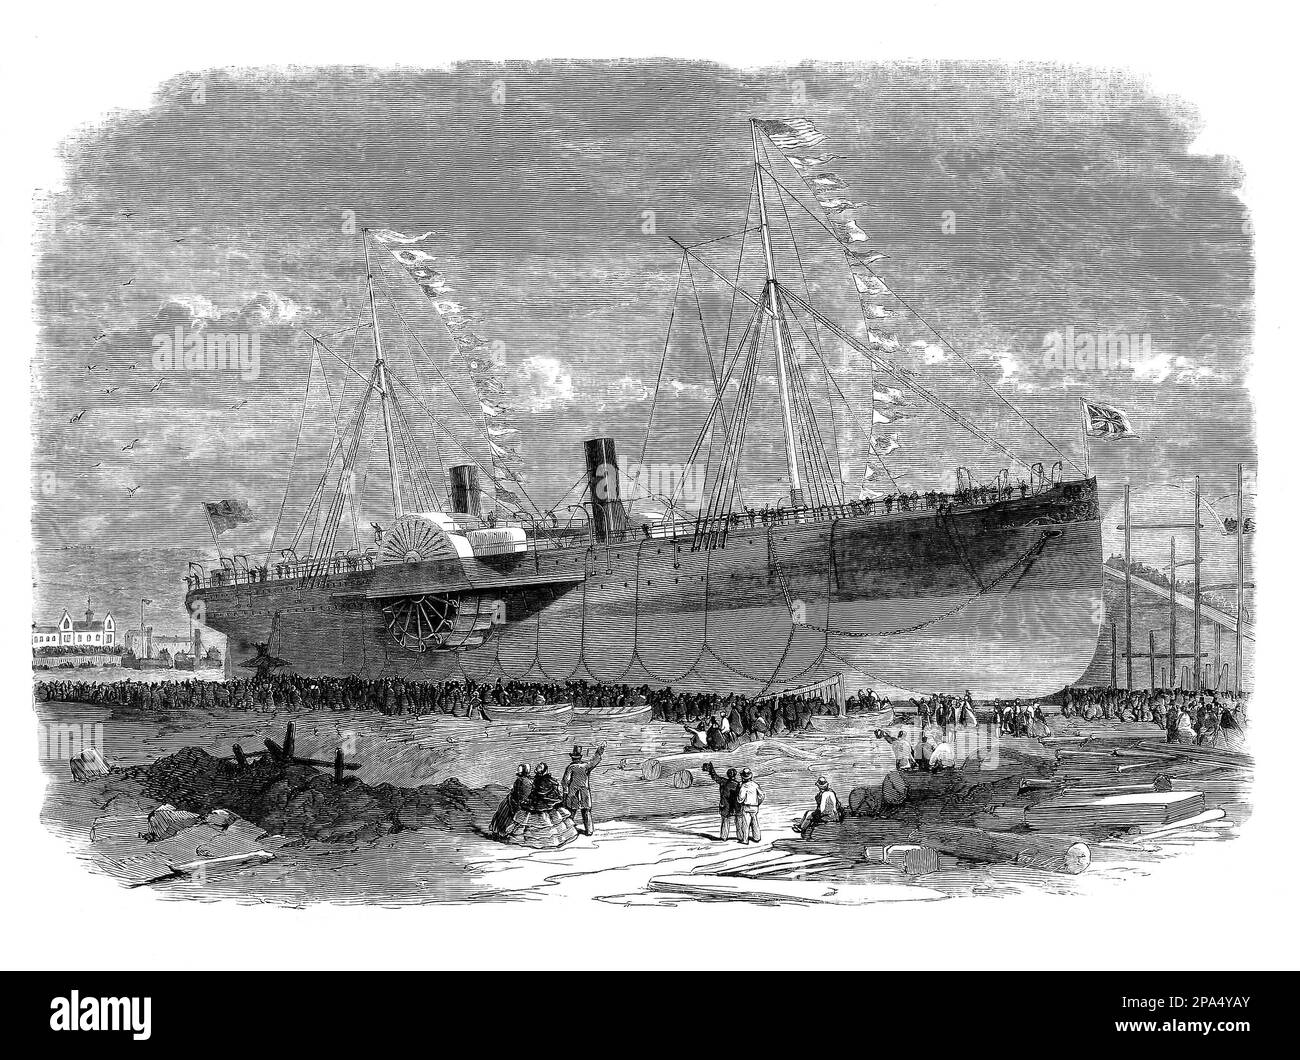 Le lancement du « Connaught », une voile et un bateau à vapeur de 380 pieds de long (120 m), à Jurow sur la Tyne, en Angleterre, en 1960. Elle a d'abord navigué de Galway, en Irlande, à St John's, à Terre-Neuve, puis a navigué jusqu'à Boston, au Massachusetts. Mais le navire a coulé en octobre 1860 dans une tempête à environ 100 milles marins (190 km) de Boston. Bien que tous les bateaux de sauvetage aient été écrasés dans la tempête, tous les passagers et l'équipage à bord ont été sauvés par les actions héroïques d'un navire de transport de fruits, le Minni Schiffer, et son capitaine, John Wilson. Banque D'Images